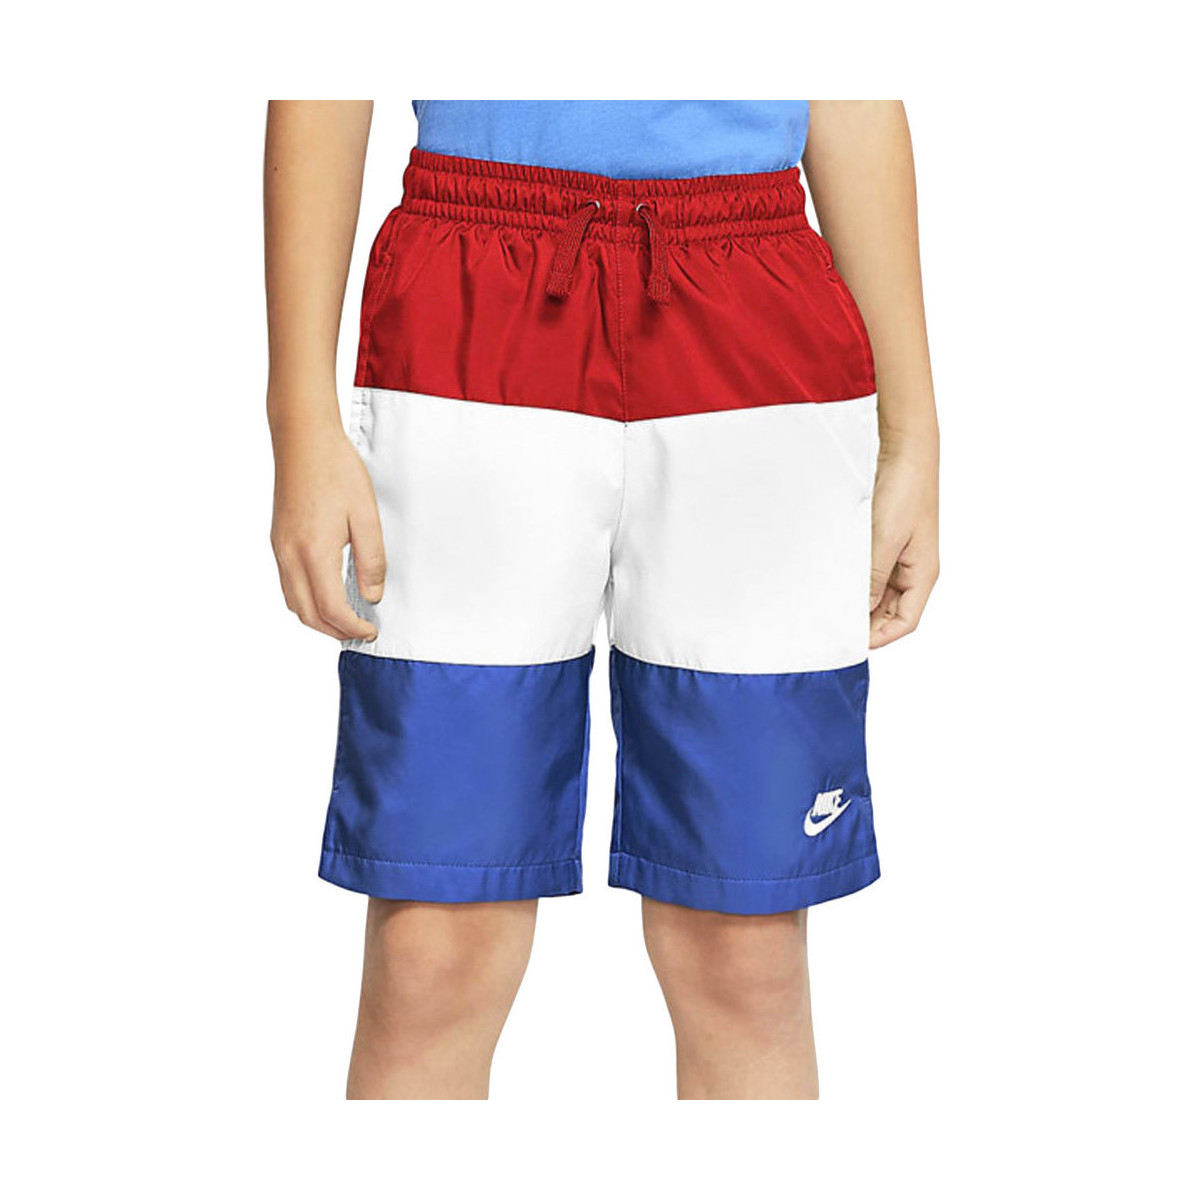 Abbigliamento Bambino Shorts / Bermuda Nike CW1021-659 Bianco